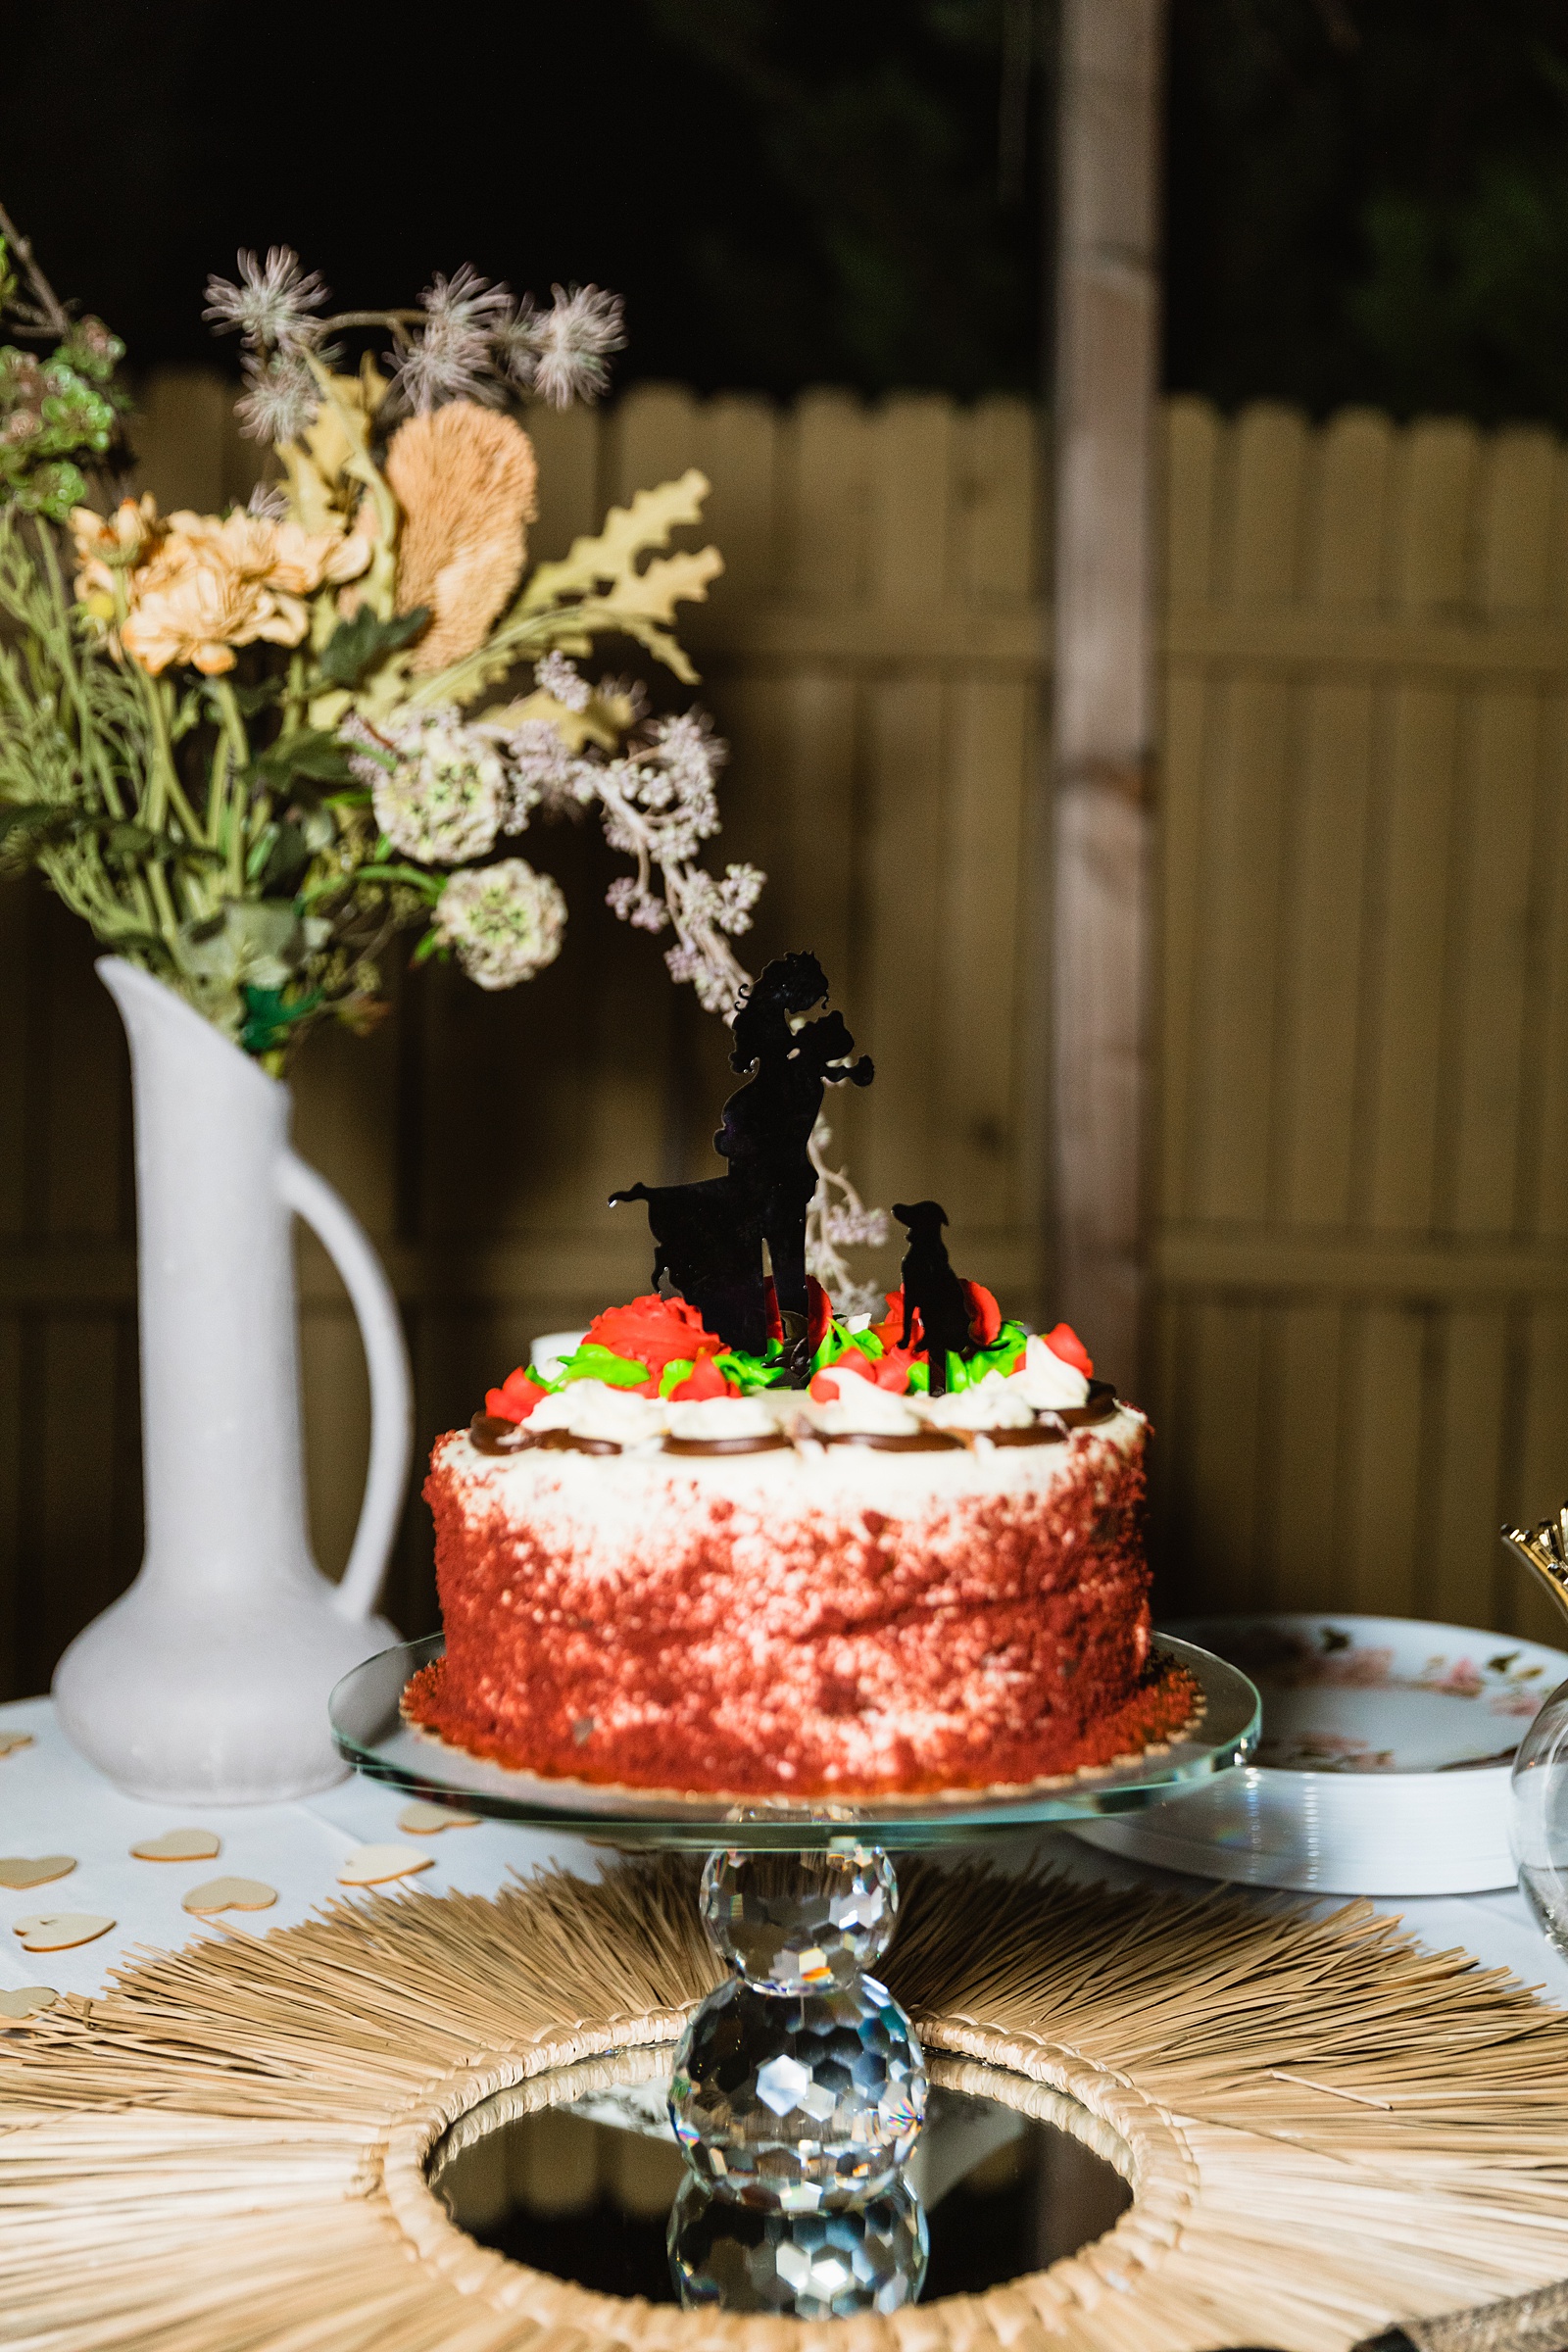 Red velvet wedding cake by Arizona wedding photographer PMA Photography.